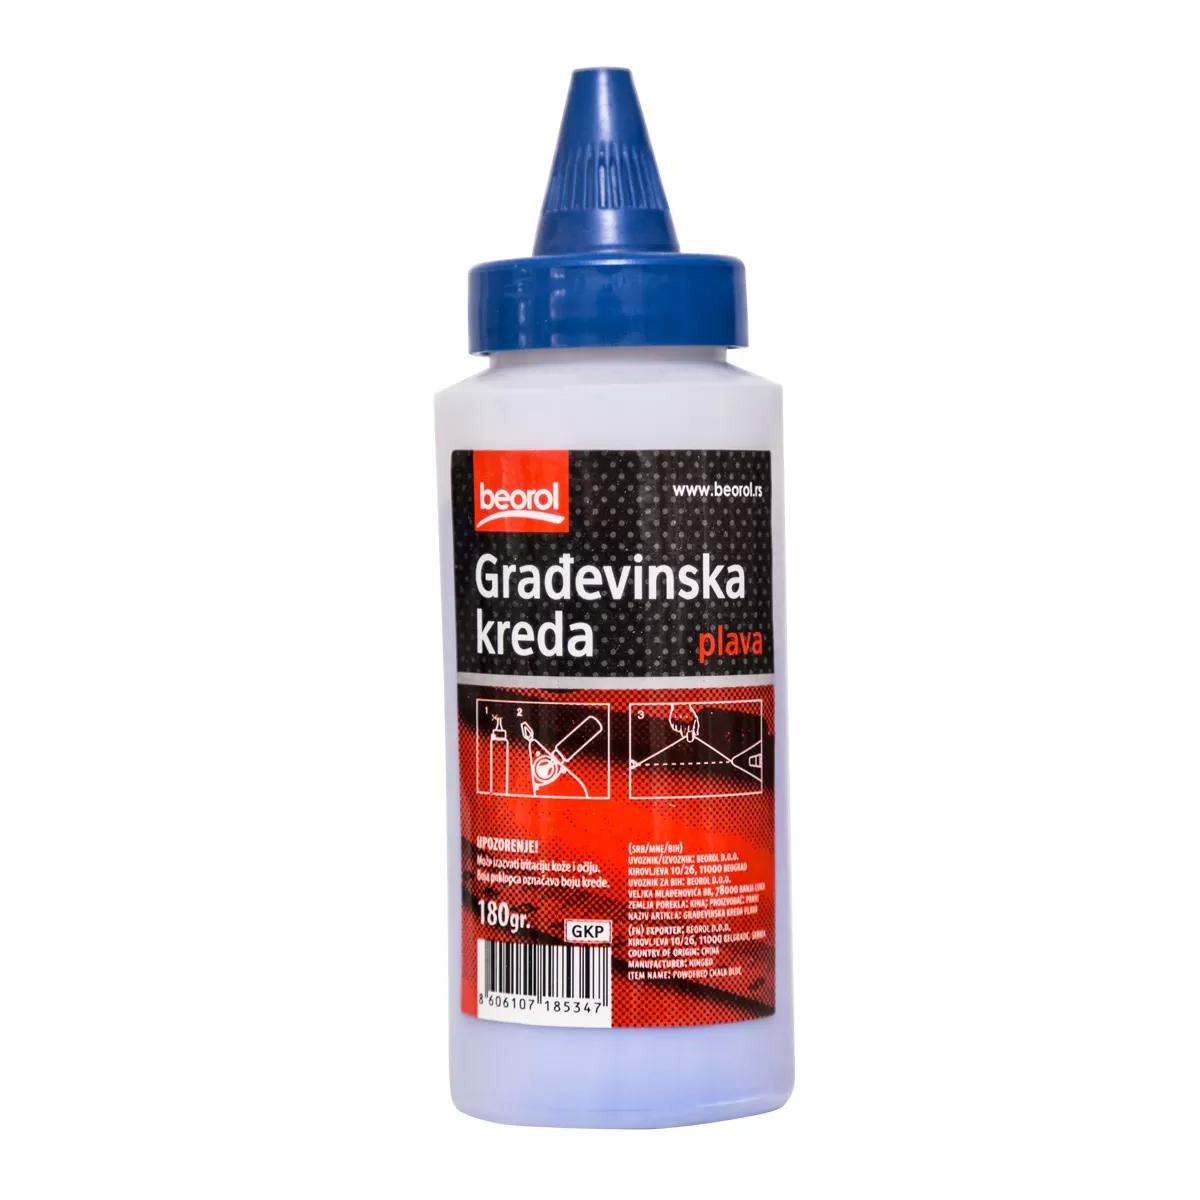 Chalk powder bottle for chalk line reel-blue 180gr GKP